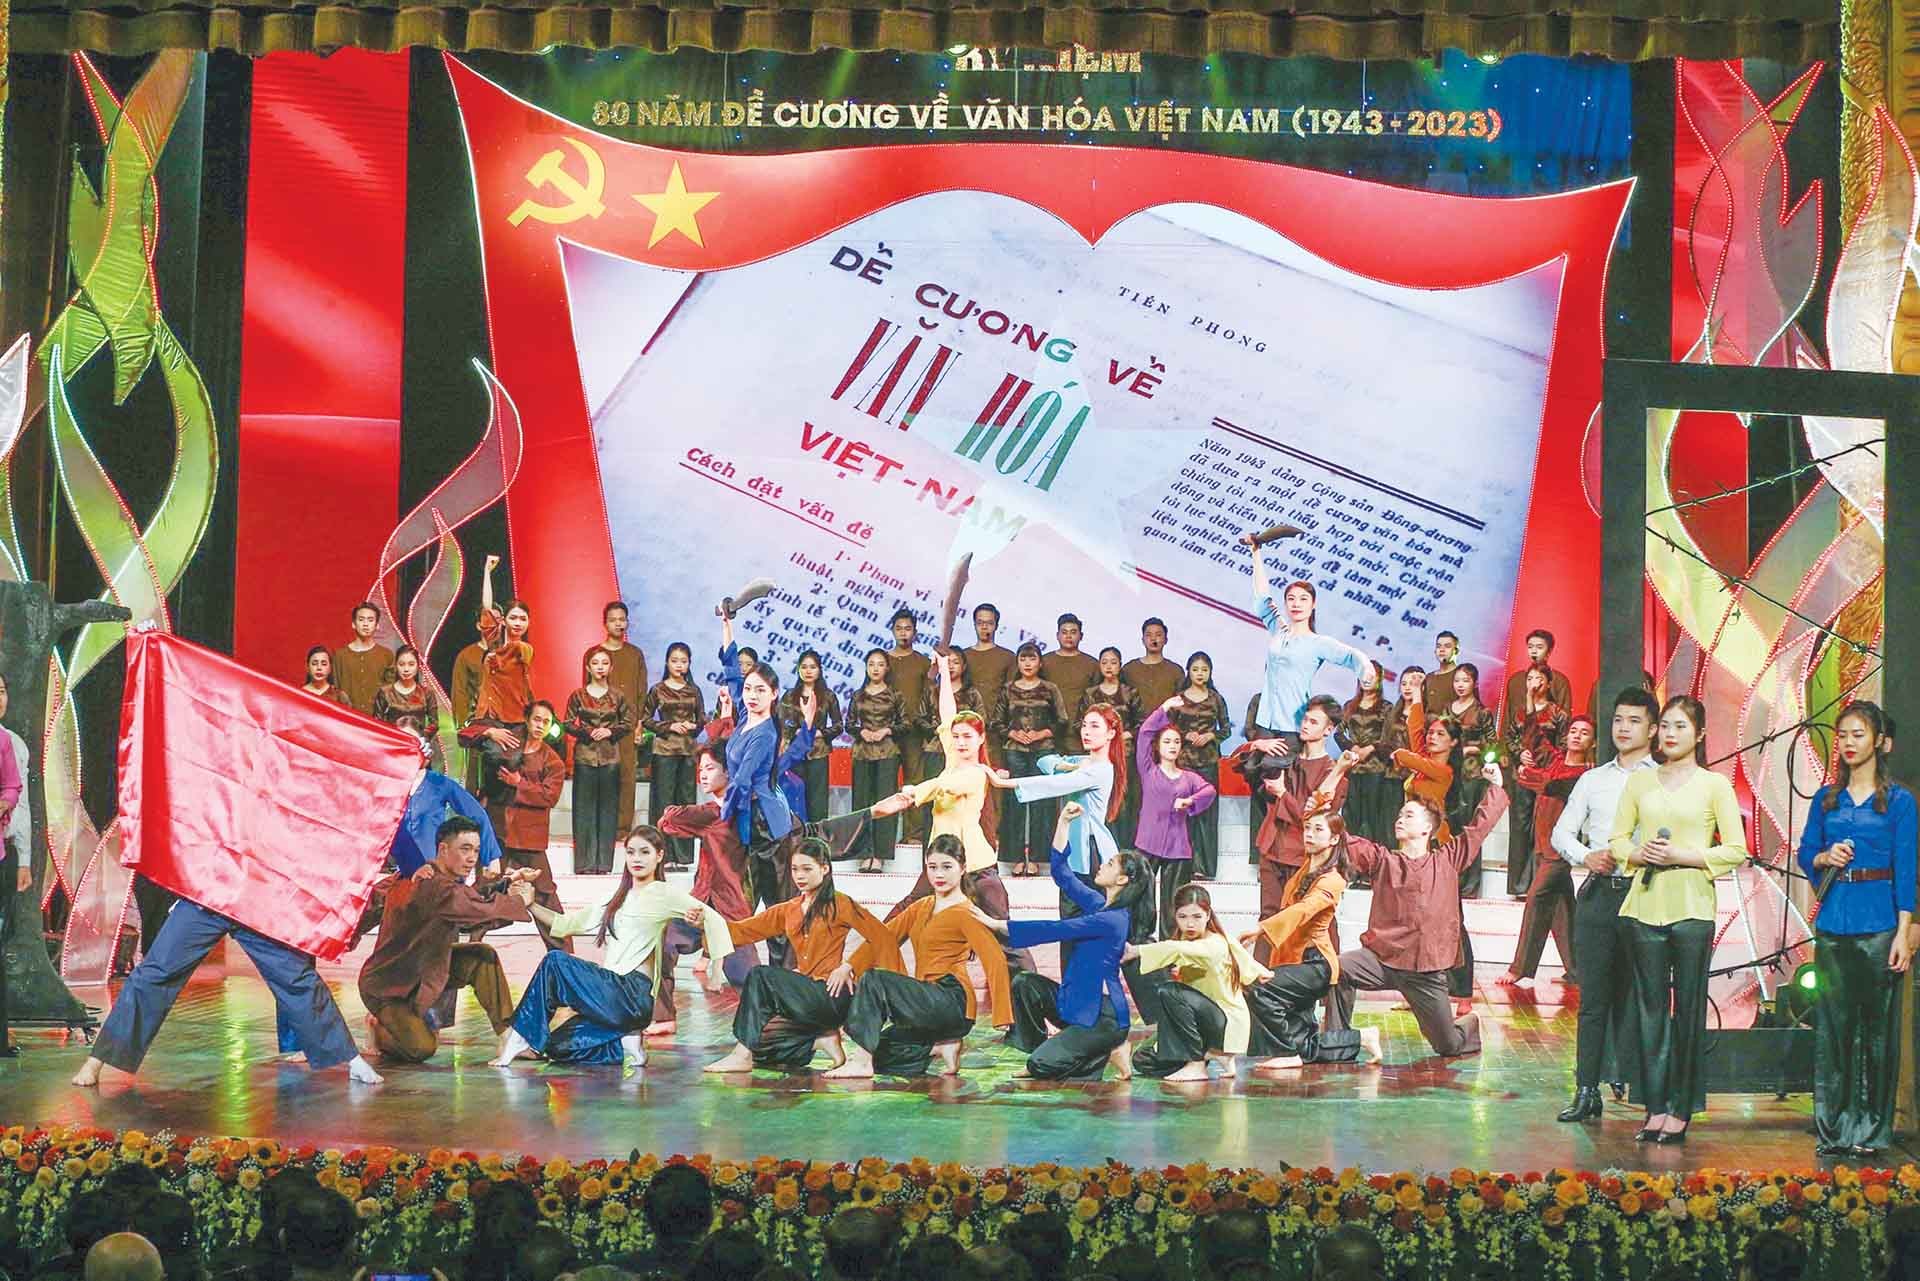 Một tiết mục biểu diễn trong chương trình nghệ thuật đặc biệt kỷ niệm 80 năm Đề cương về văn hóa Việt Nam. (Ảnh: Khiếu Minh)